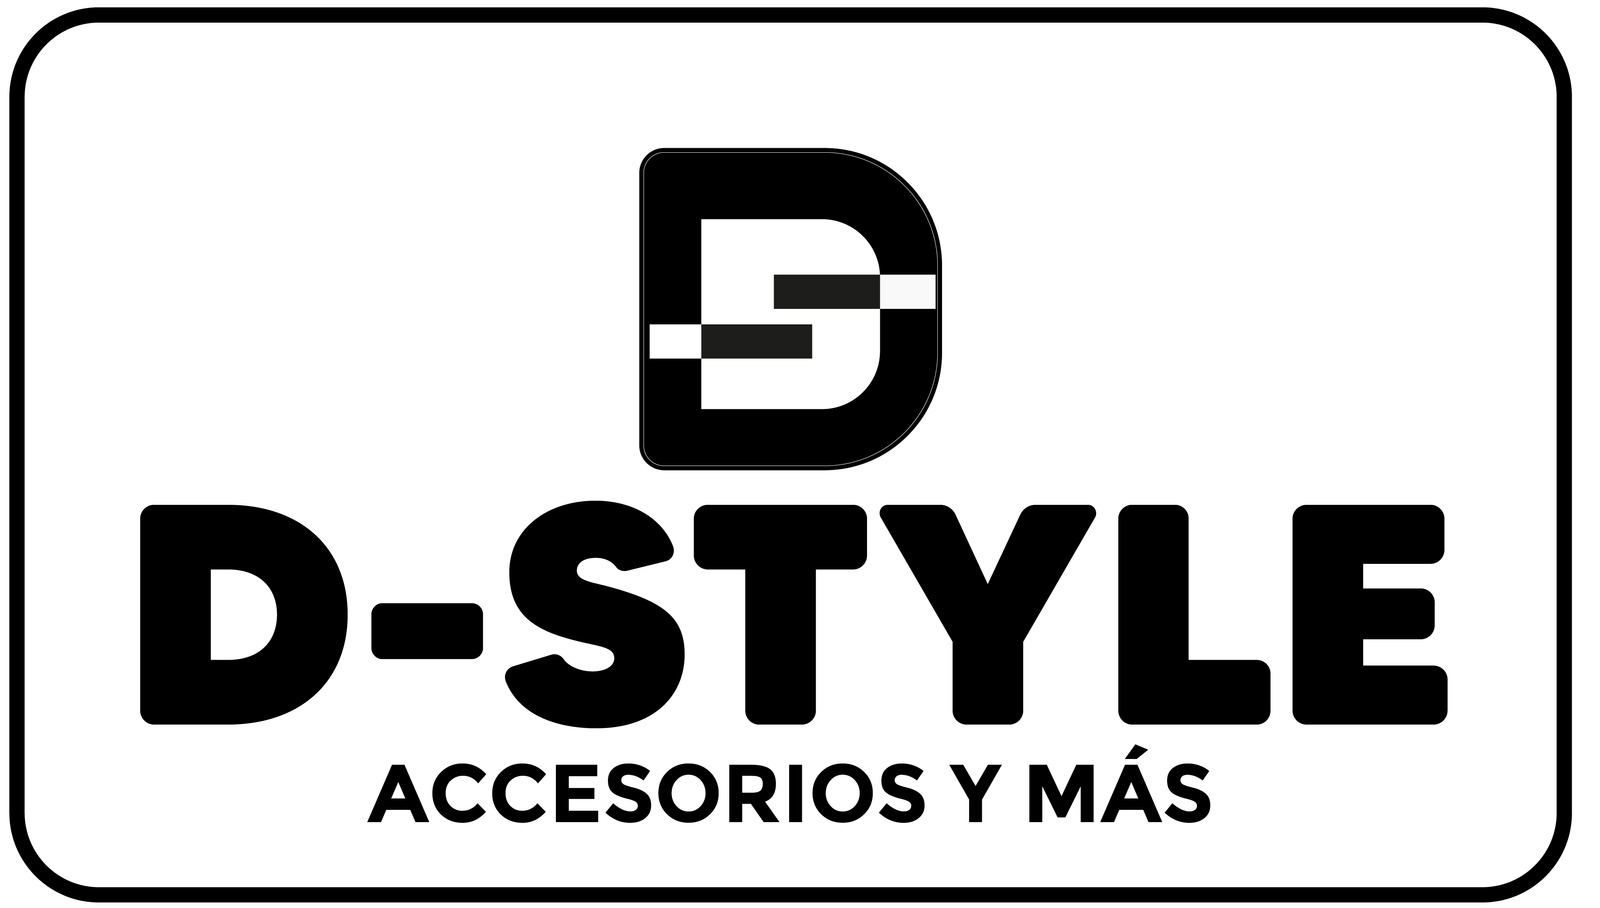 D-Style